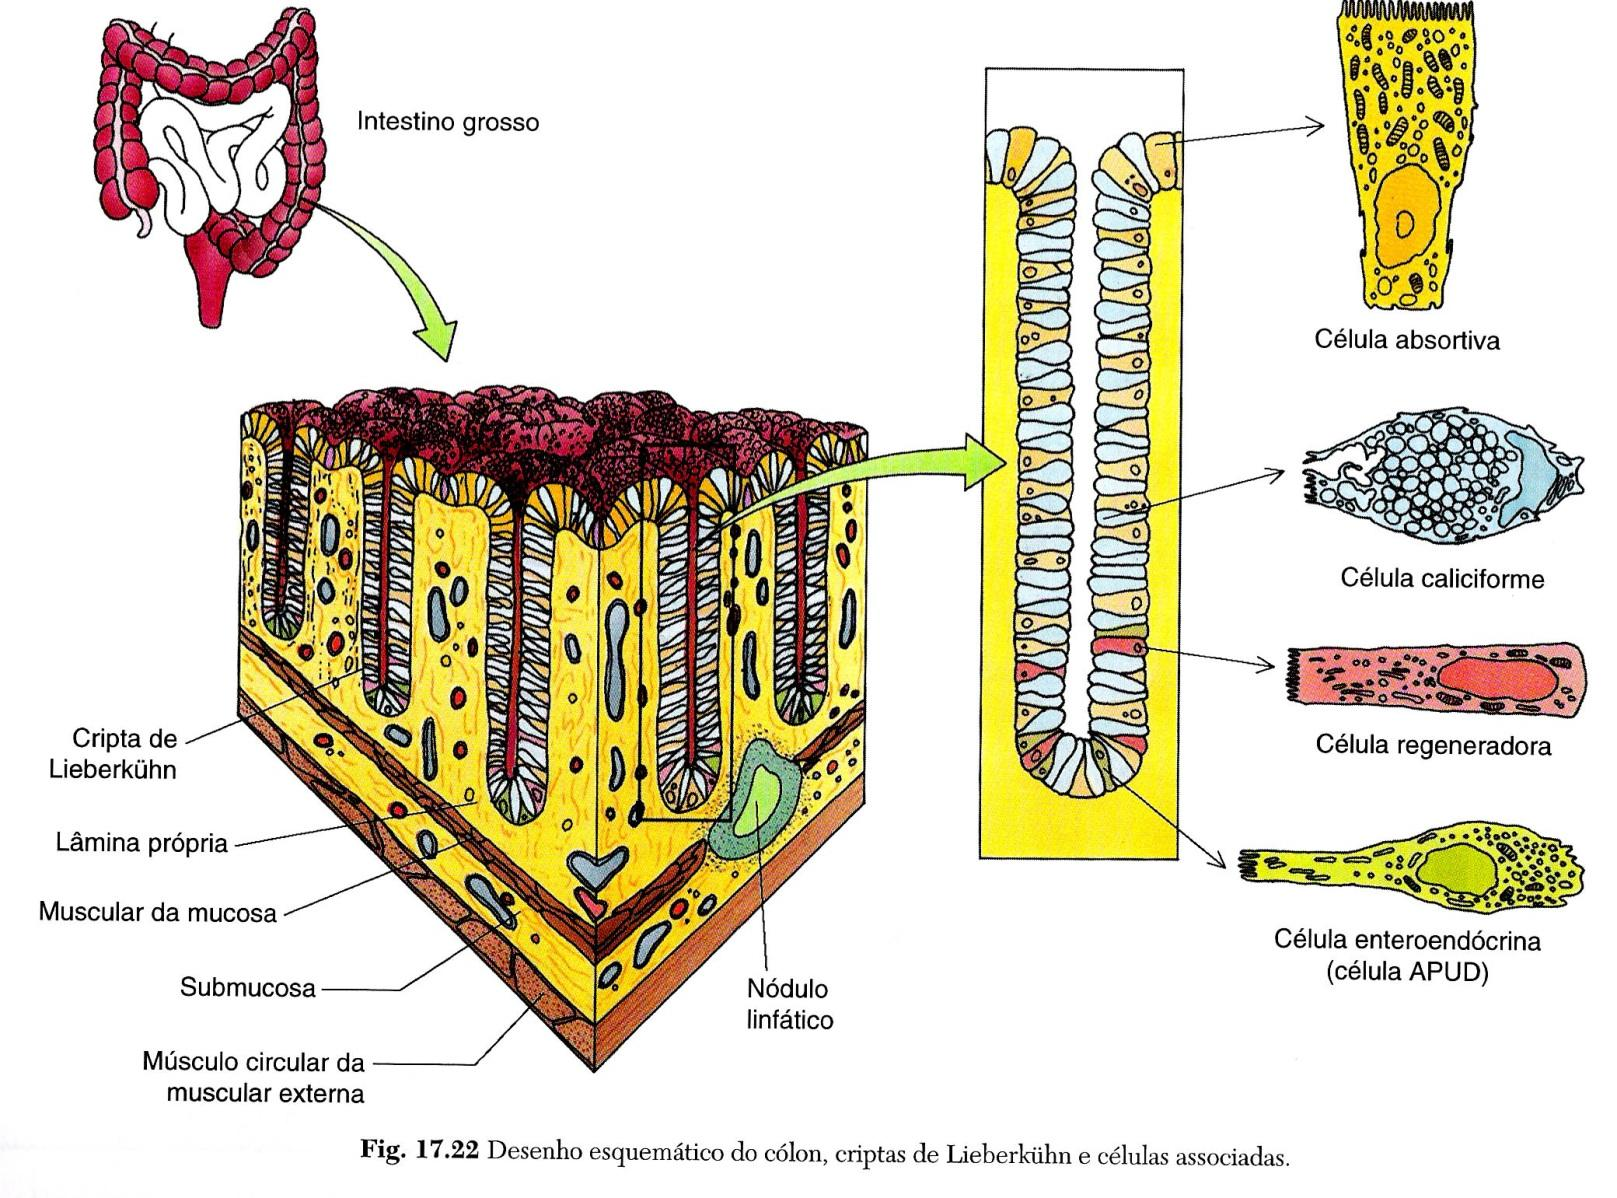 O intestino grosso apresenta epitélio cilíndrico simples com muitas células produtoras de muco